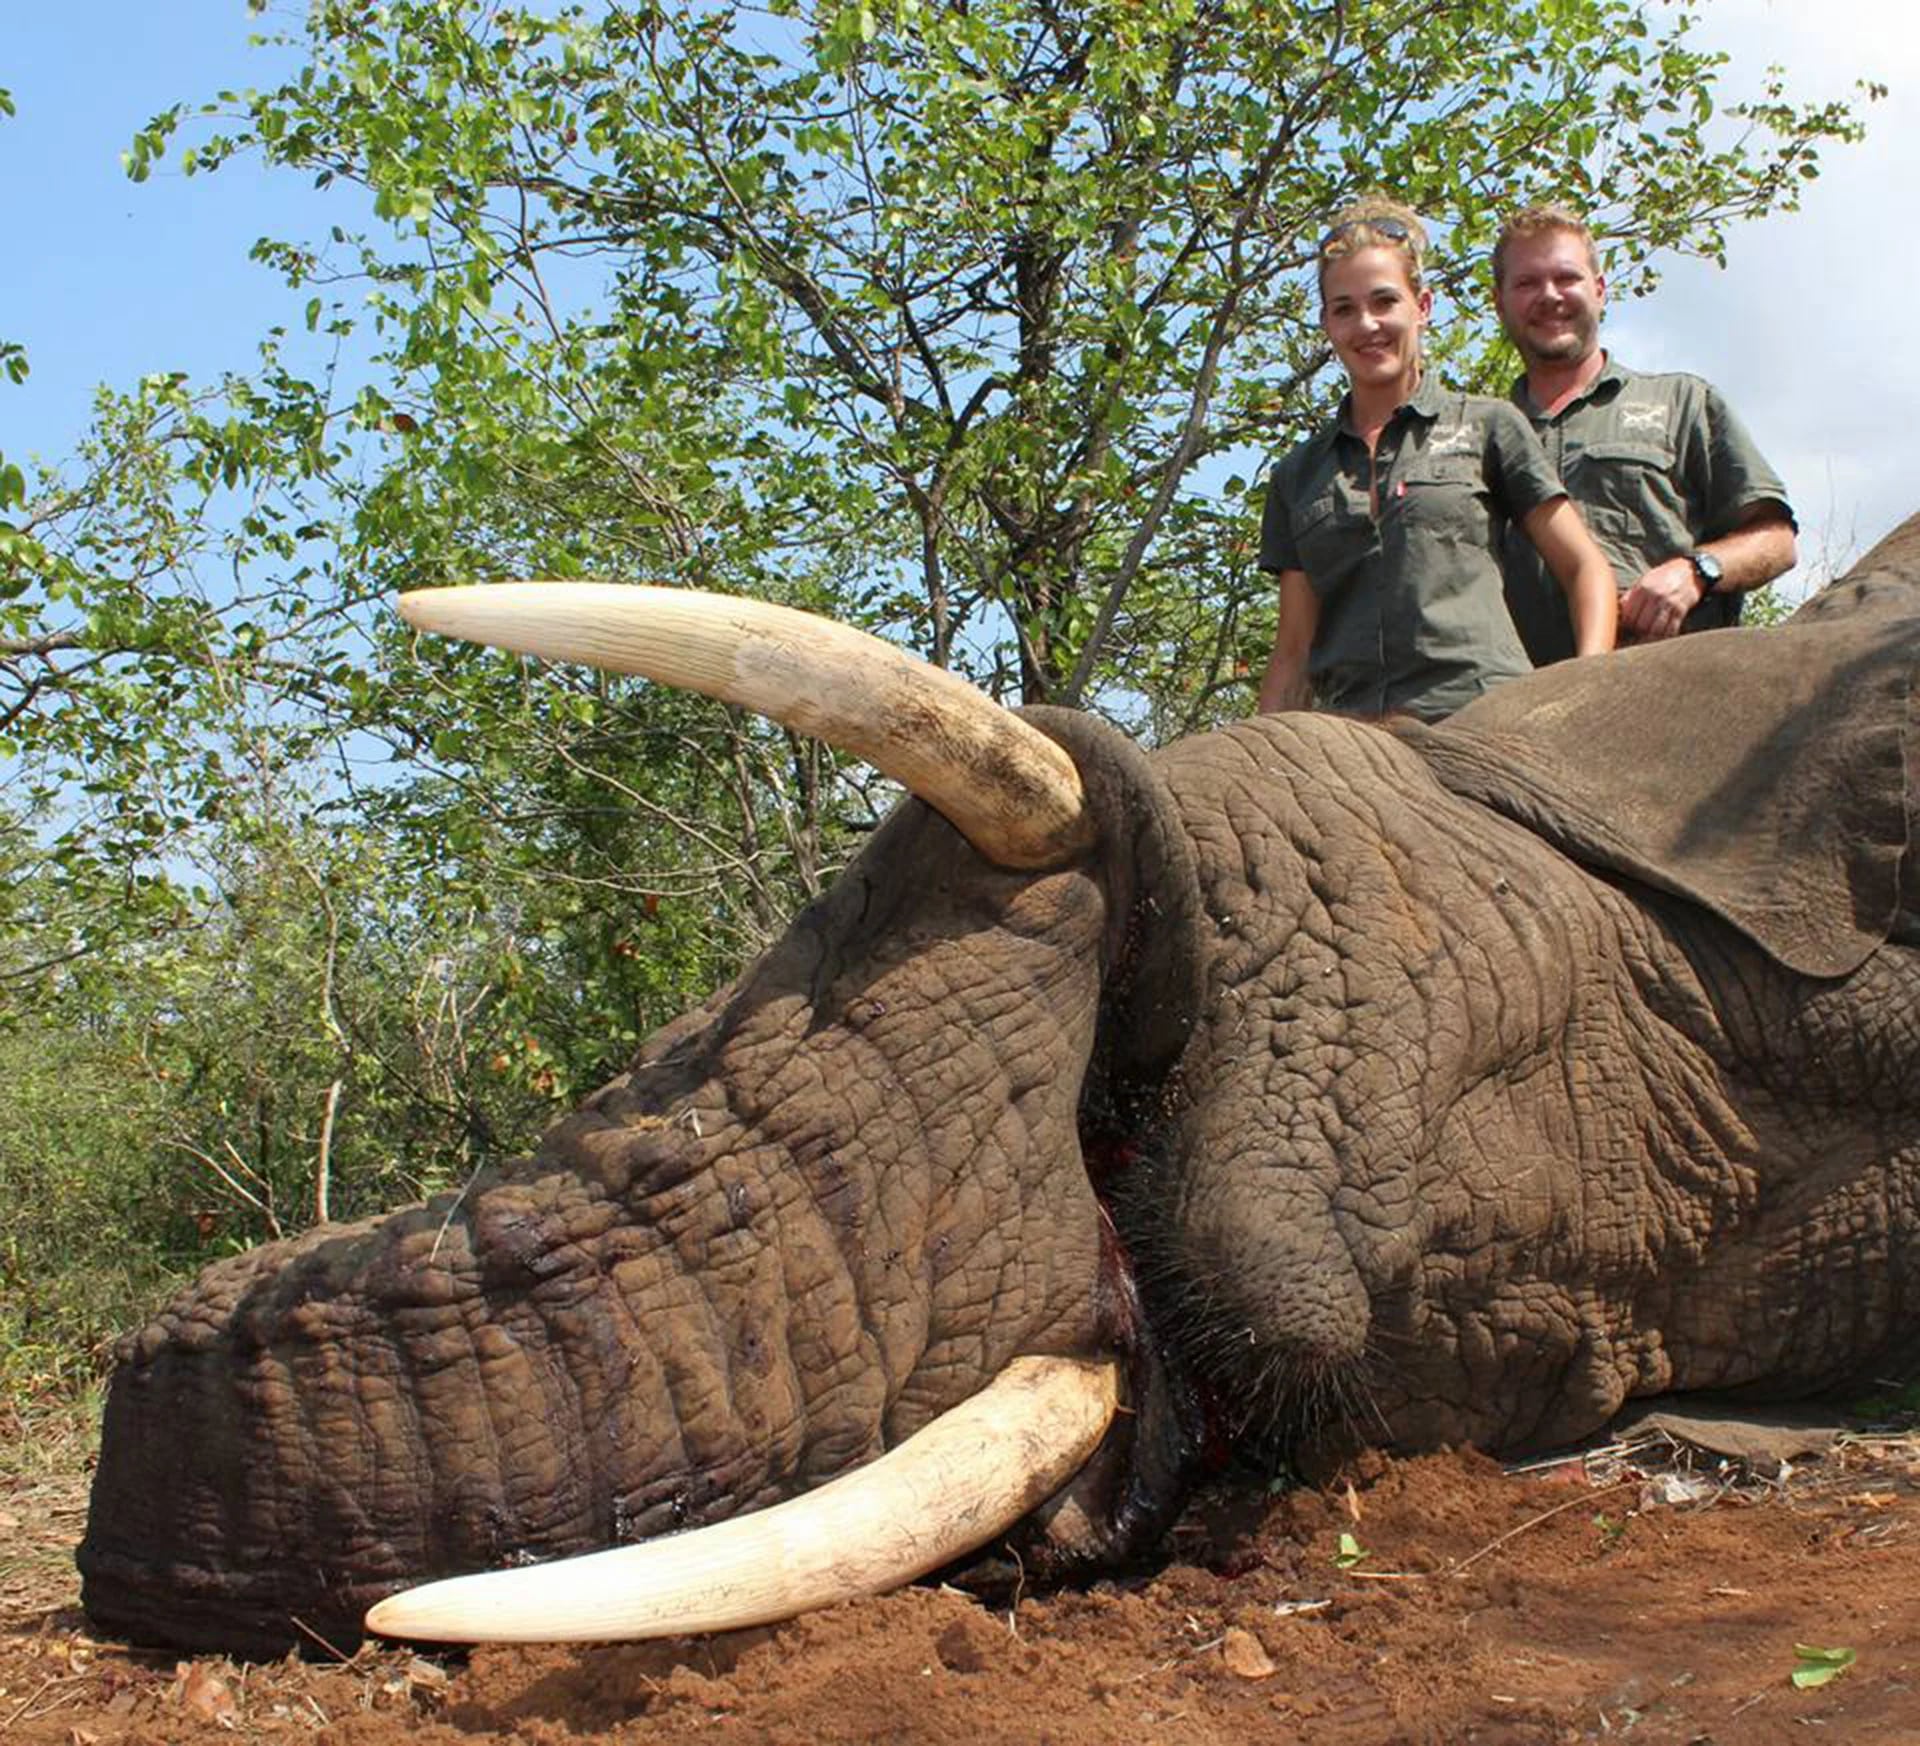 Chris y Anna-Marie van der Westhuizen montaron la compañía African Pride Hunting Safaris. Dicen que al matar animales mantienen un “equilibrio”